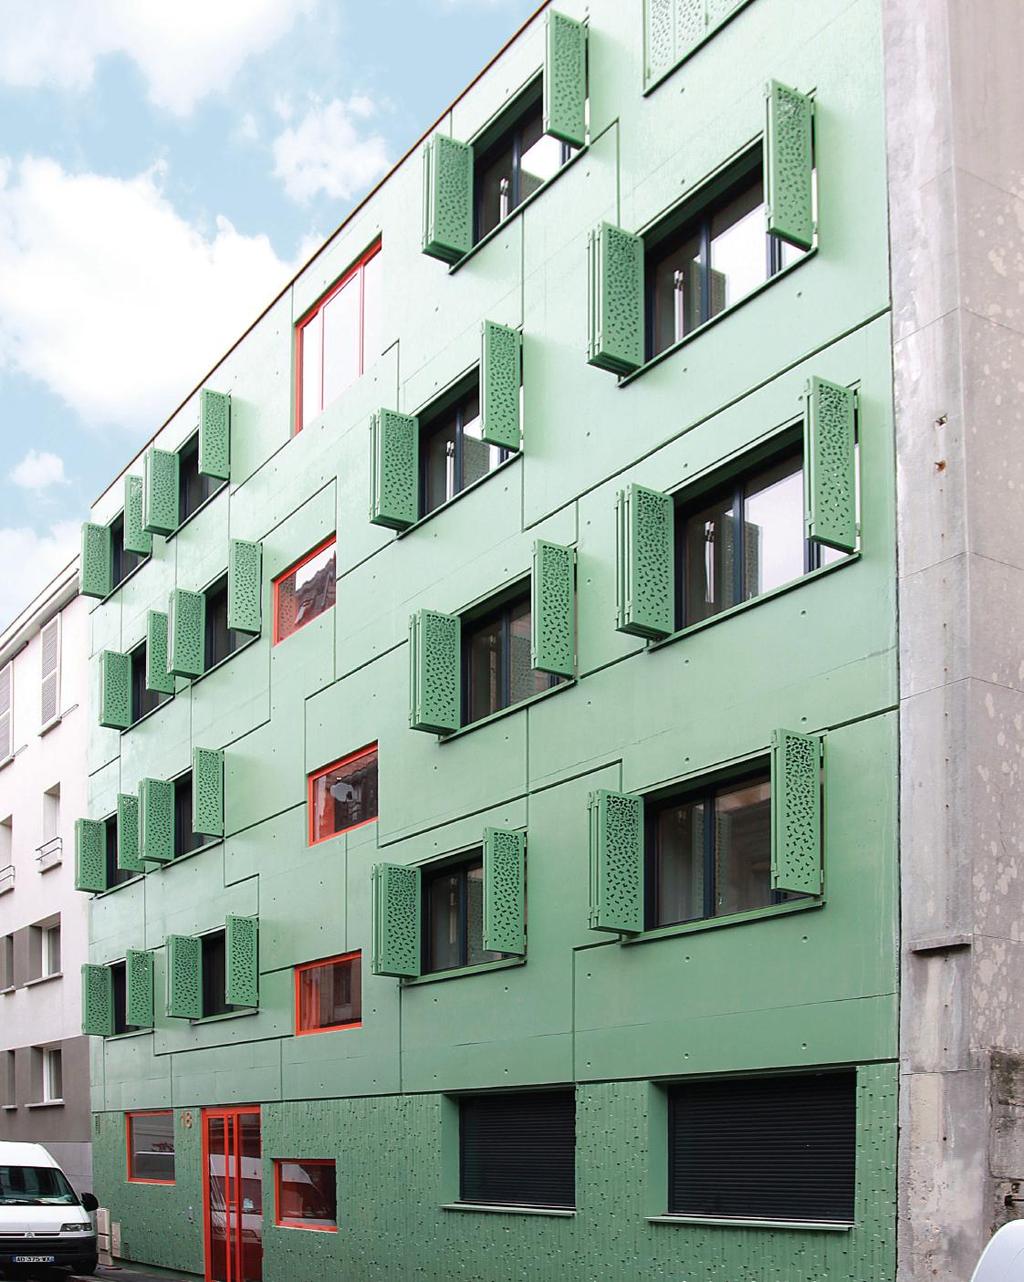 PRODUITS DE DÉCORATION / DECORATION PRODUCTS 16 Immeuble, Paris (France) - béton traité avec